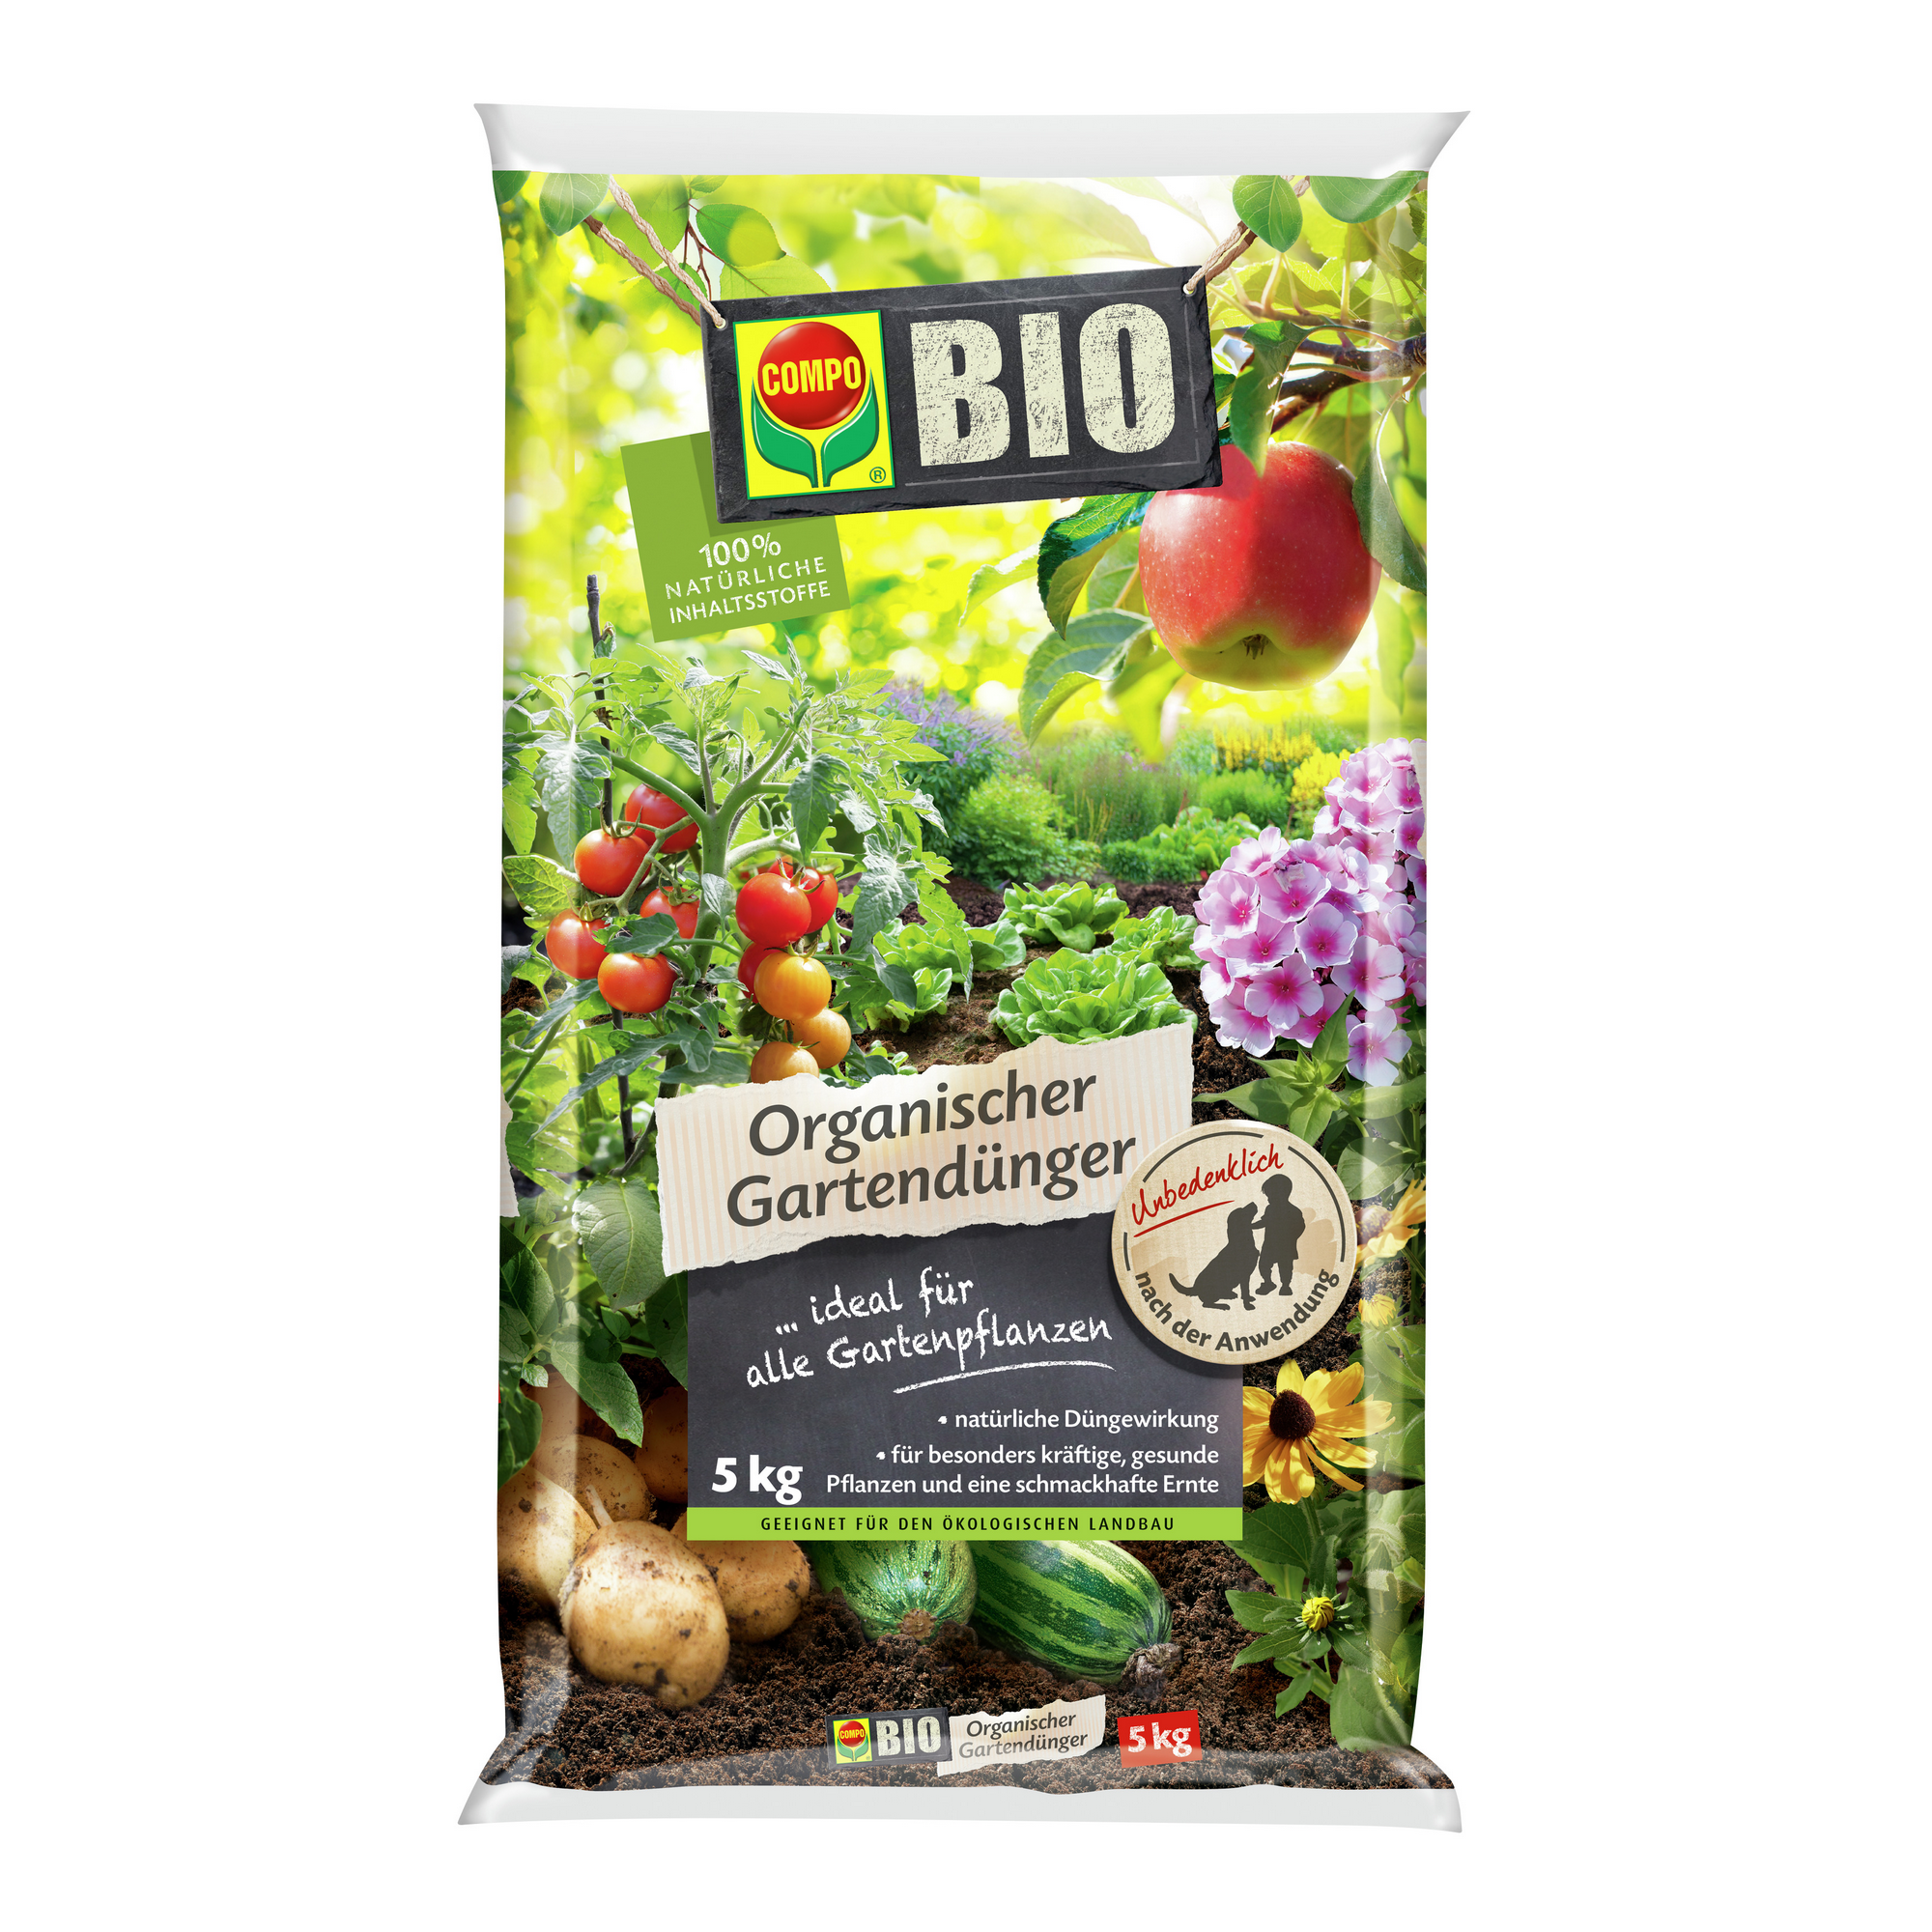 Organischer Bio-Gartendünger 5 kg + product picture